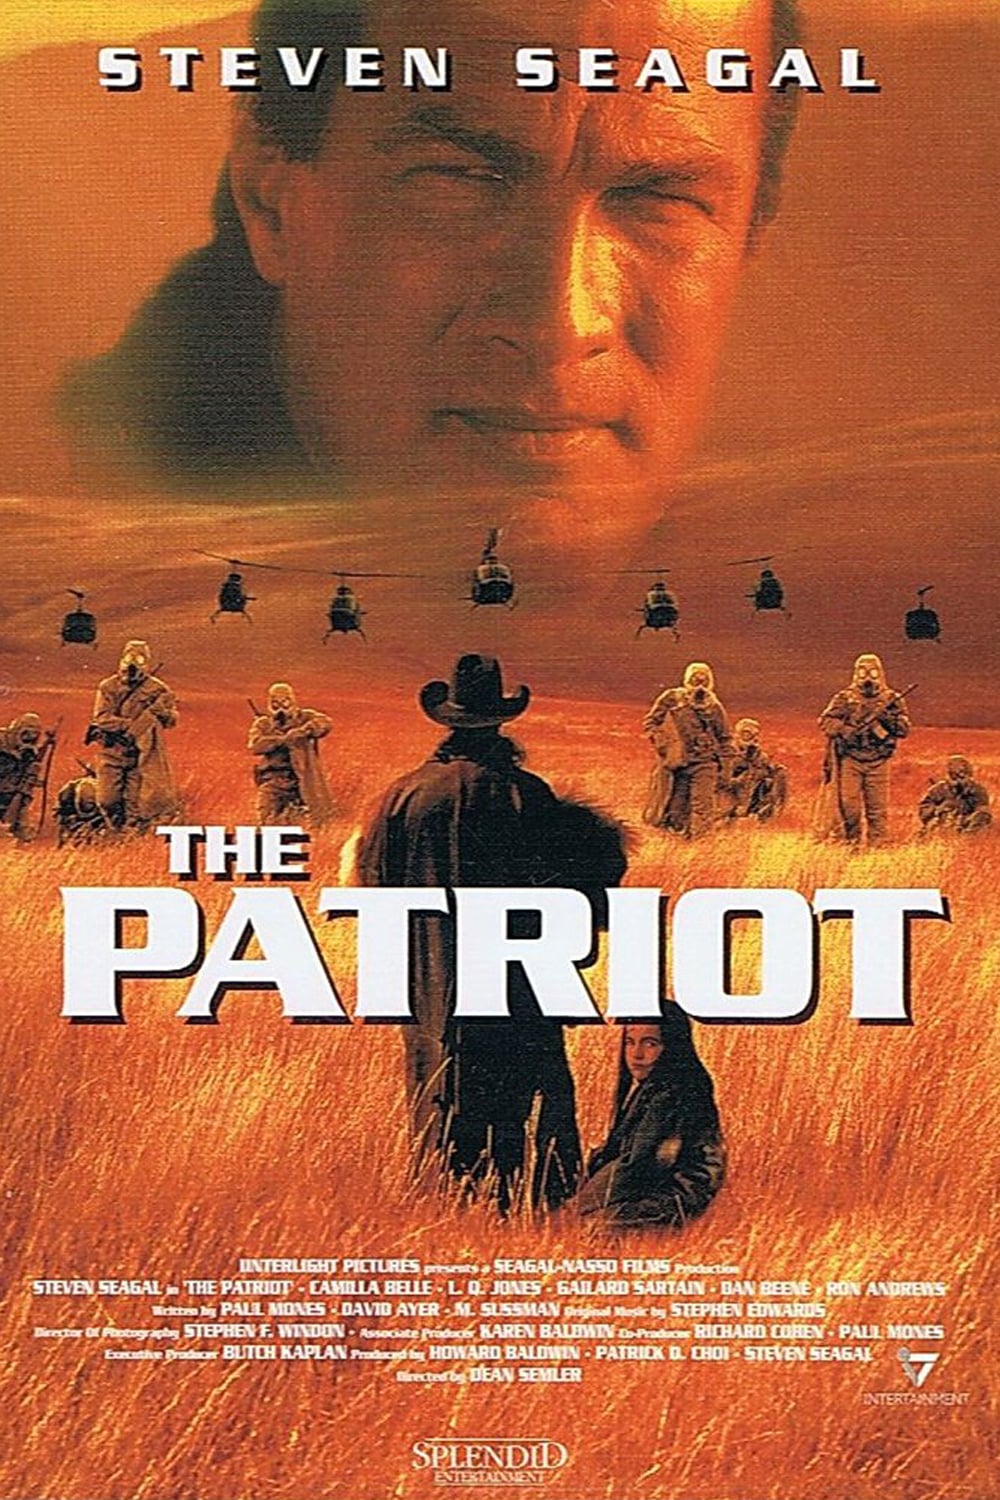 Plakat von "The Patriot"